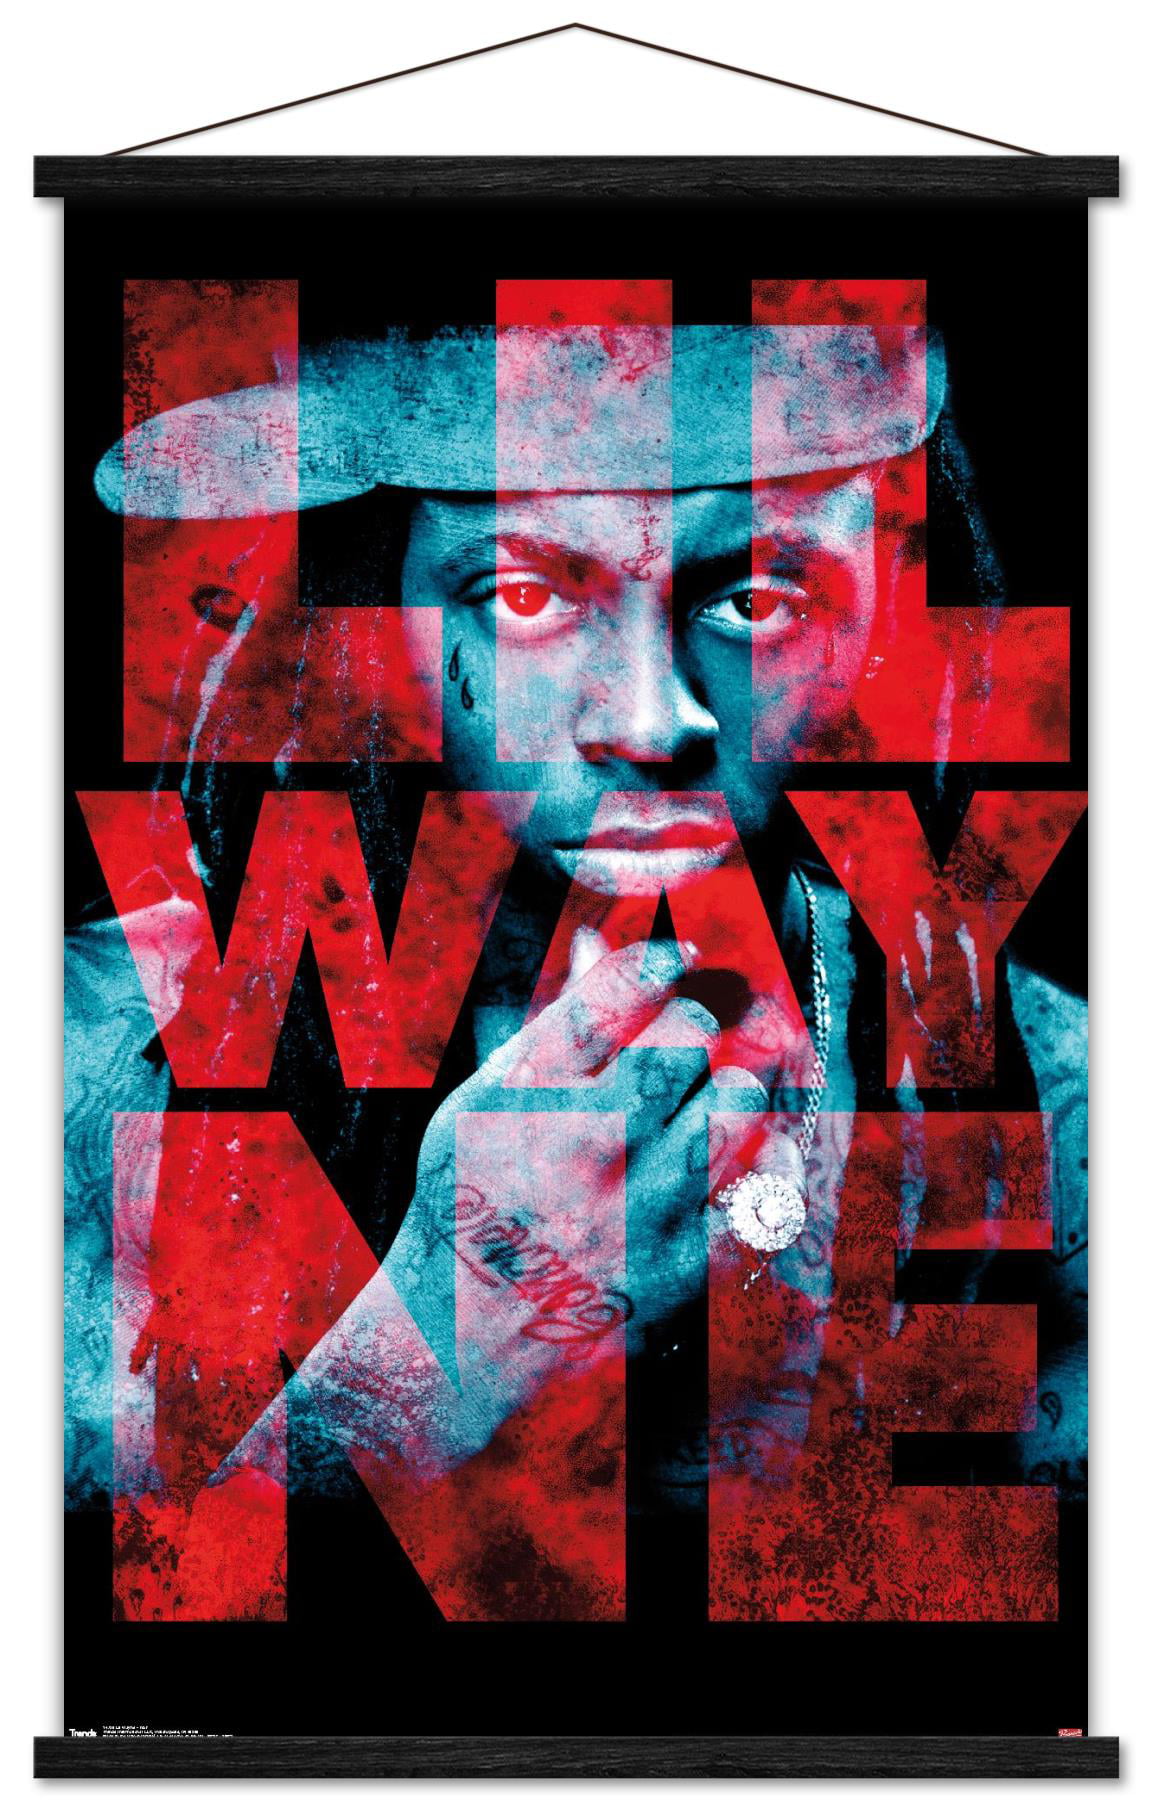 Lil wayne тексты. Постер Lil Wayne. Lil Wayne плакат. Lil Wayne album Cover.